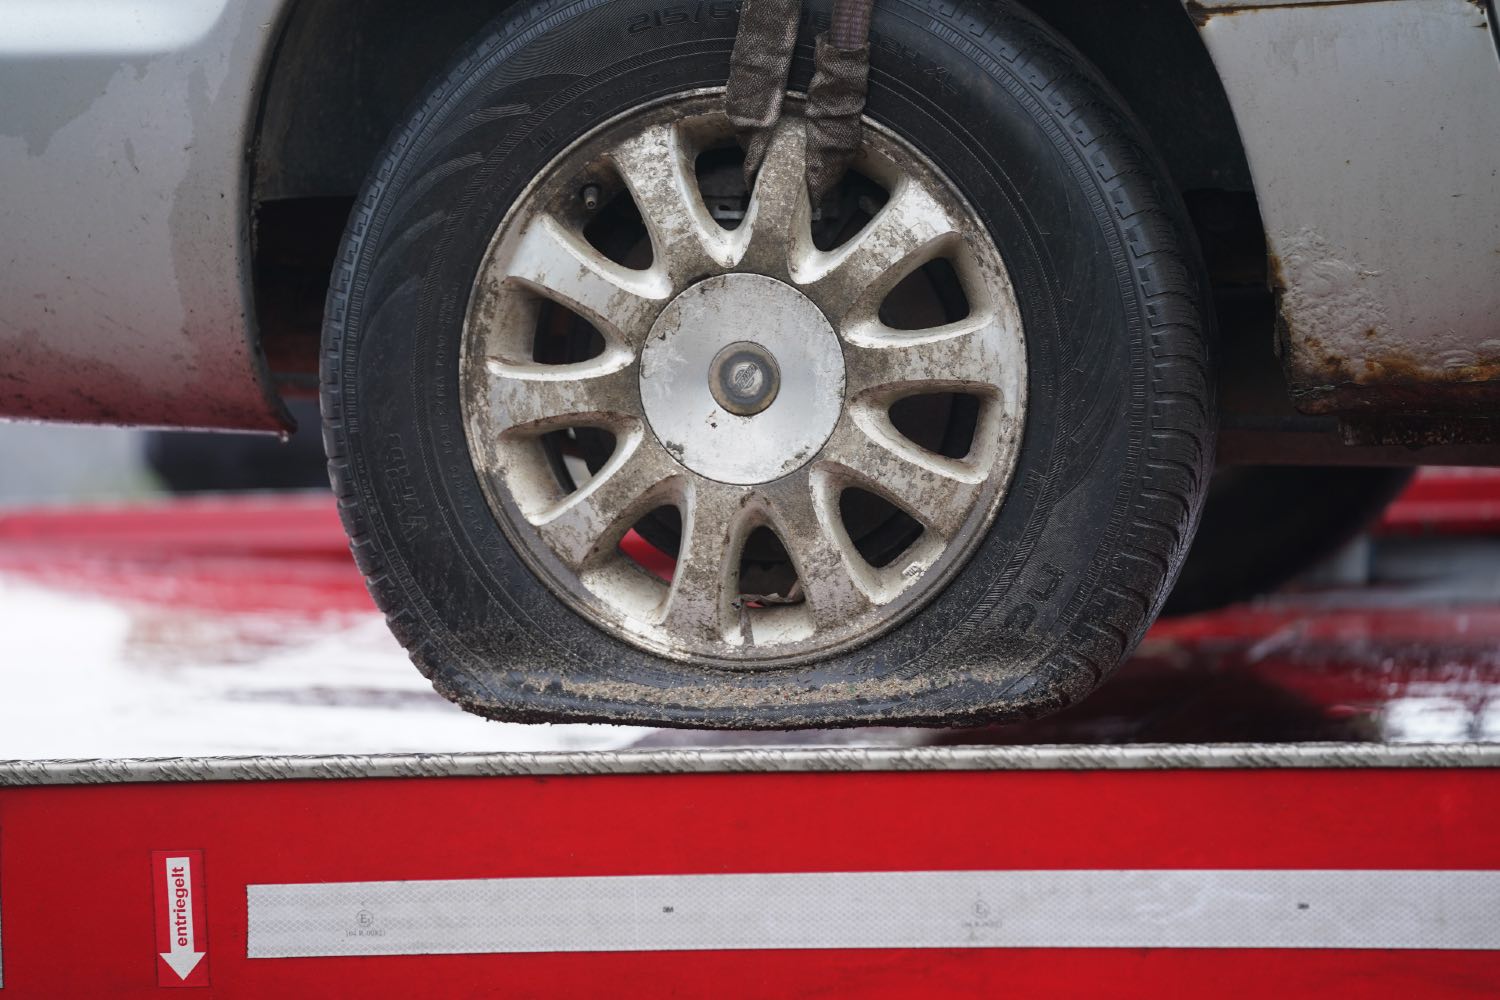 A flat tire on a car